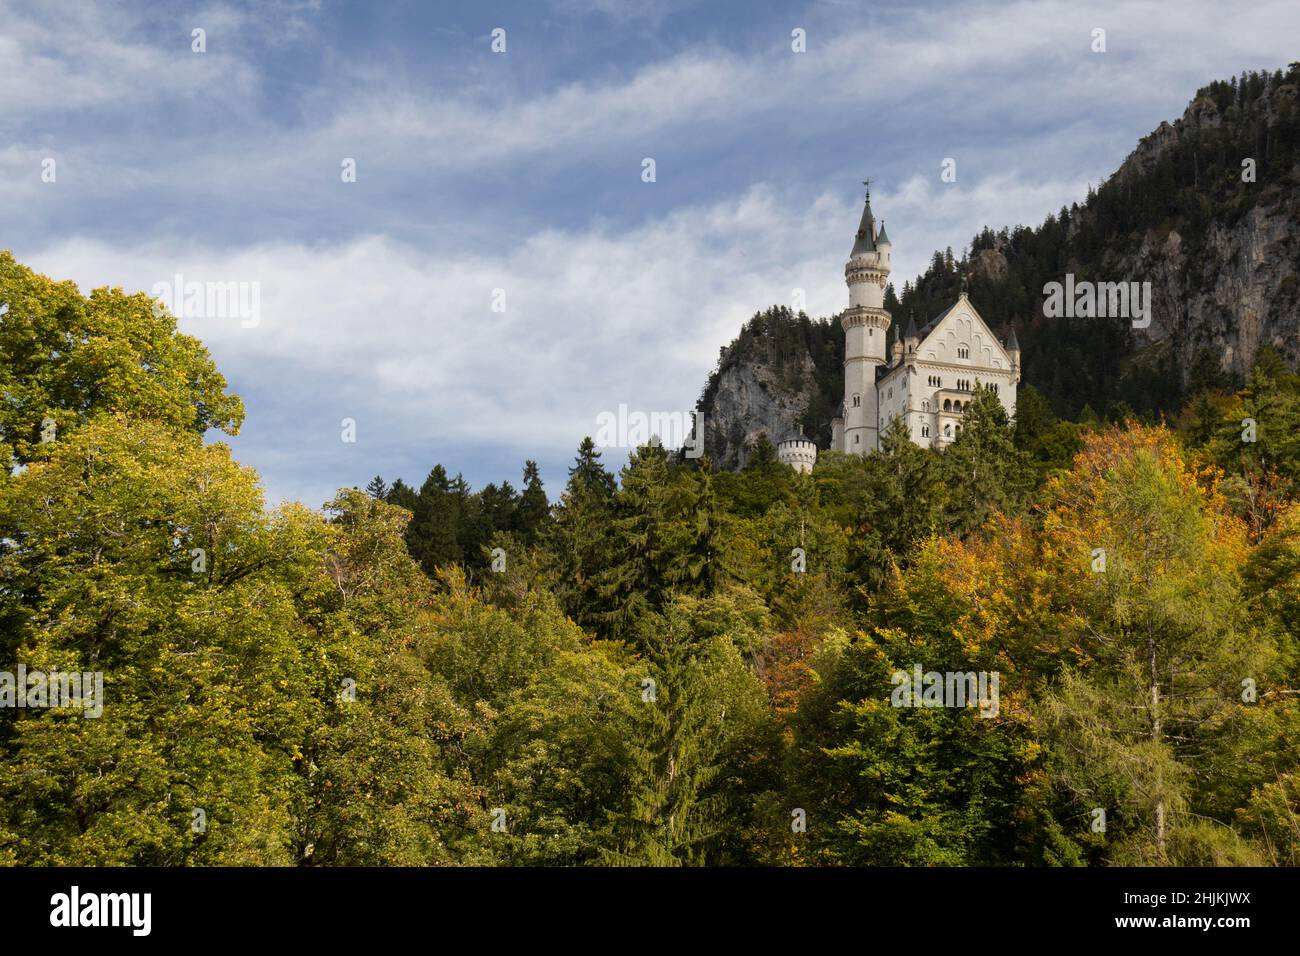 Das malerische Märchenschloß im Ost-Allgäu bei Füssen, eingebettet in eine traumhafte Landschaft. 1869 war der Baustart des Schlosses, welches von Kön Stock Photo